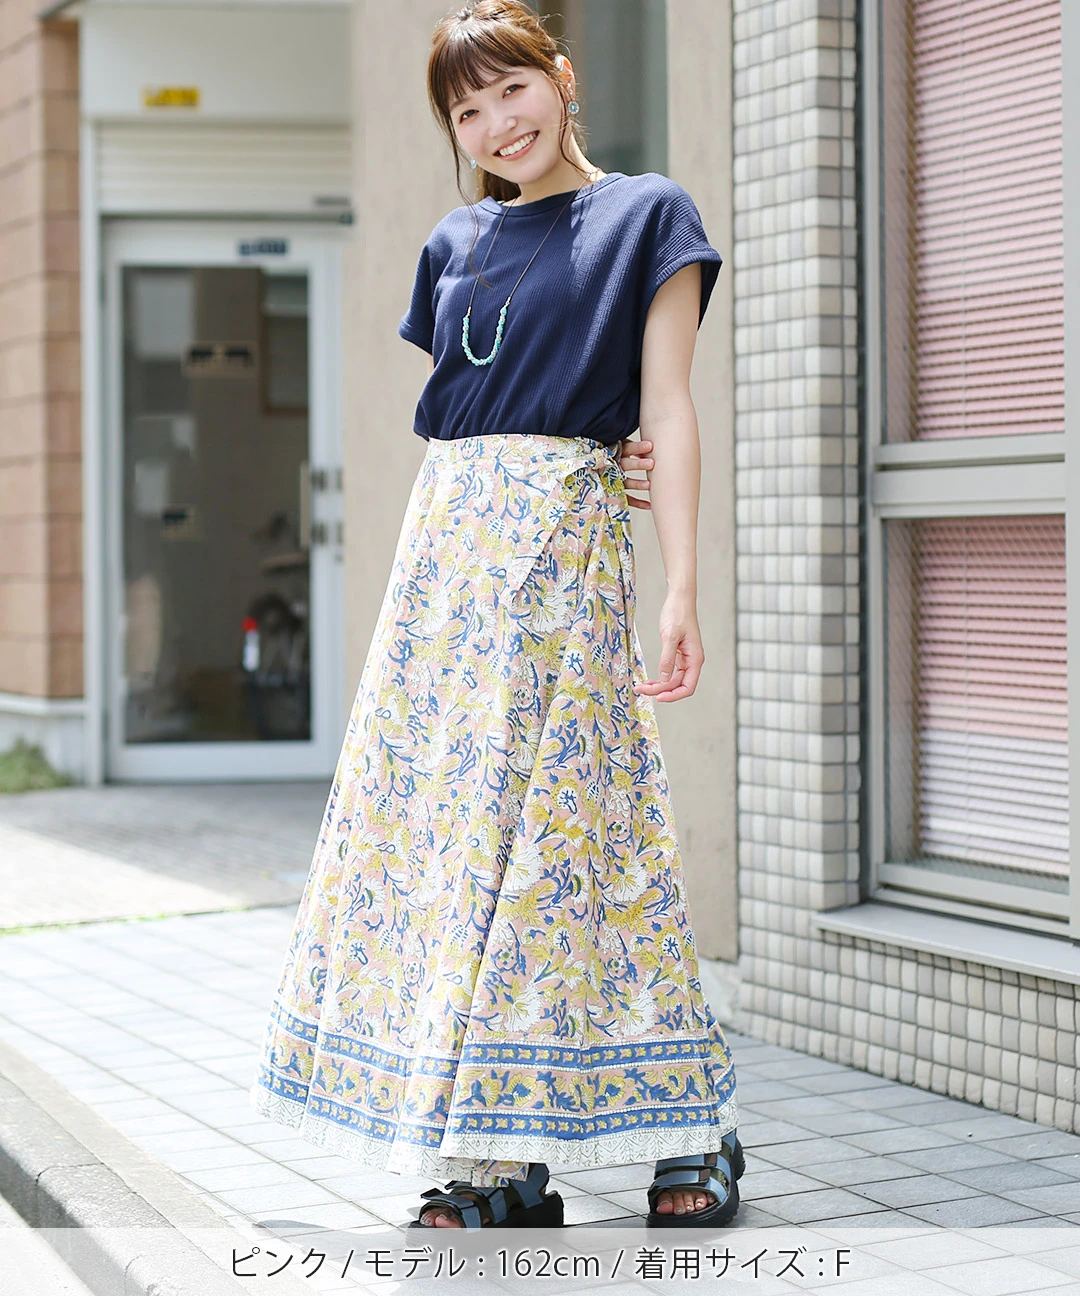 Shanti Shanti ブロックプリントラップスカート【WEB限定】 / スカート